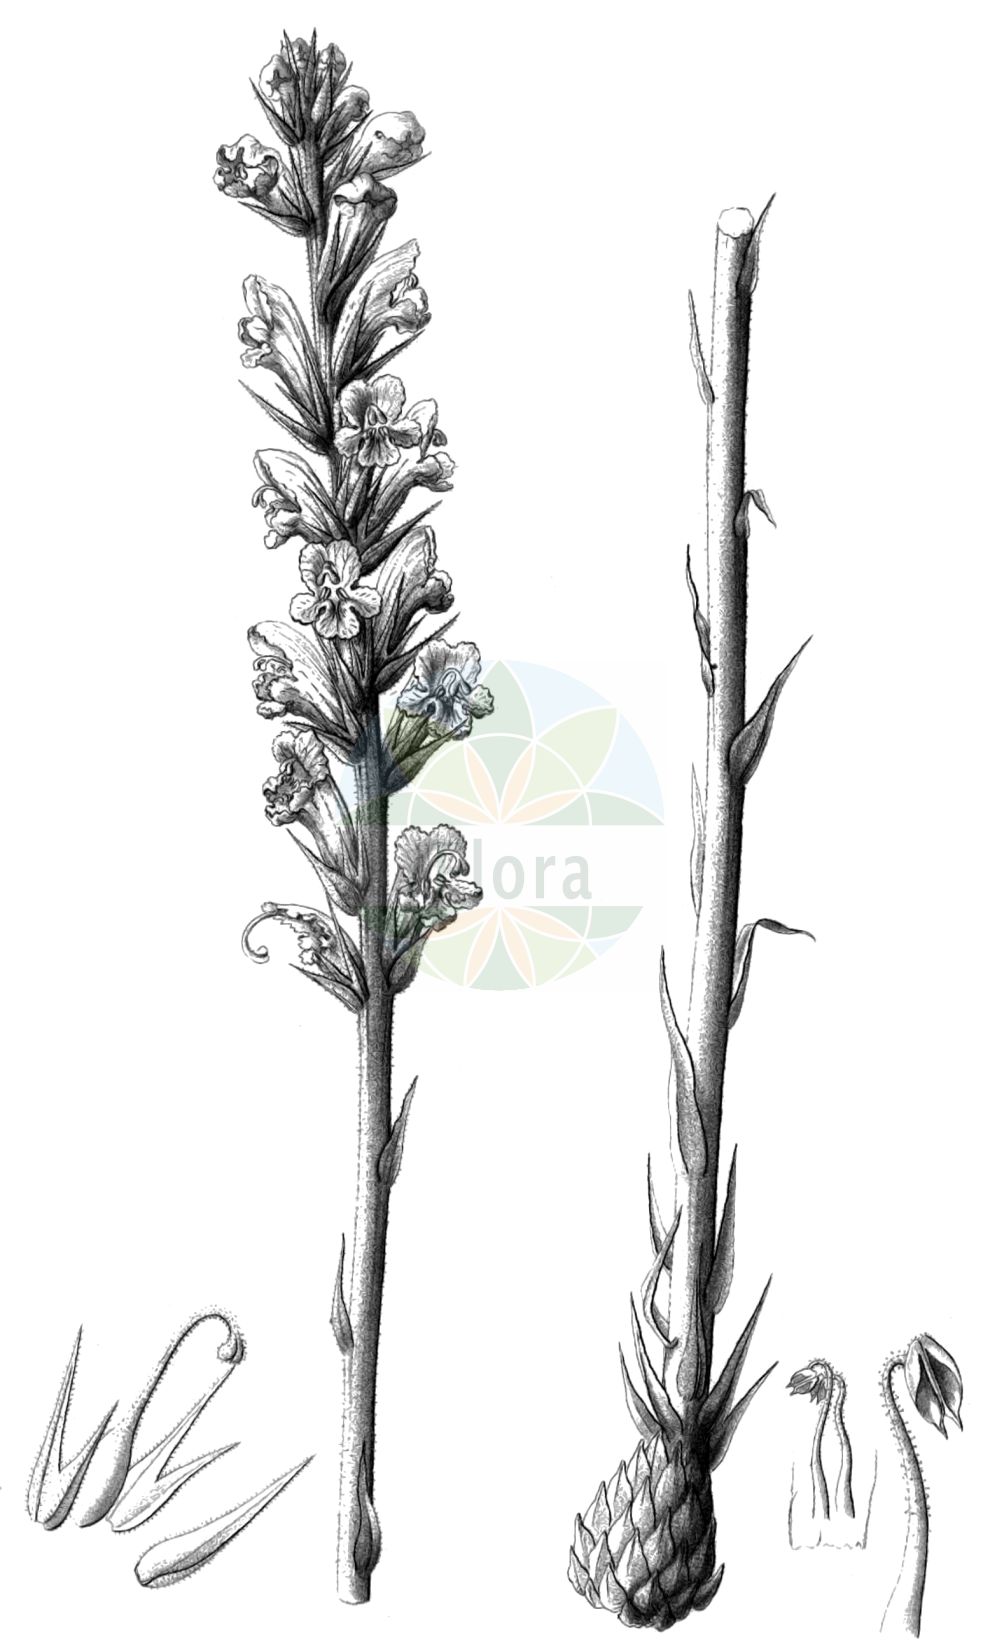 Historische Abbildung von Orobanche rapum-genistae (Ginster-Sommerwurz - Greater Broomrape). Das Bild zeigt Blatt, Bluete, Frucht und Same. ---- Historical Drawing of Orobanche rapum-genistae (Ginster-Sommerwurz - Greater Broomrape). The image is showing leaf, flower, fruit and seed.(Orobanche rapum-genistae,Ginster-Sommerwurz,Greater Broomrape,Orobanche benthamii,Orobanche bracteata,Orobanche insolita,Orobanche major,Orobanche rapum,Orobanche rapum-genistae,Orobanche rapum-genistae subsp. benthamii,Ginster-Sommerwurz,Greater Broomrape,Orobanche,Sommerwurz,Broomrape,Orobanchaceae,Sommerwurzgewächse,Broomrape family,Blatt,Bluete,Frucht,Same,leaf,flower,fruit,seed,Reichenbach (1823-1832))